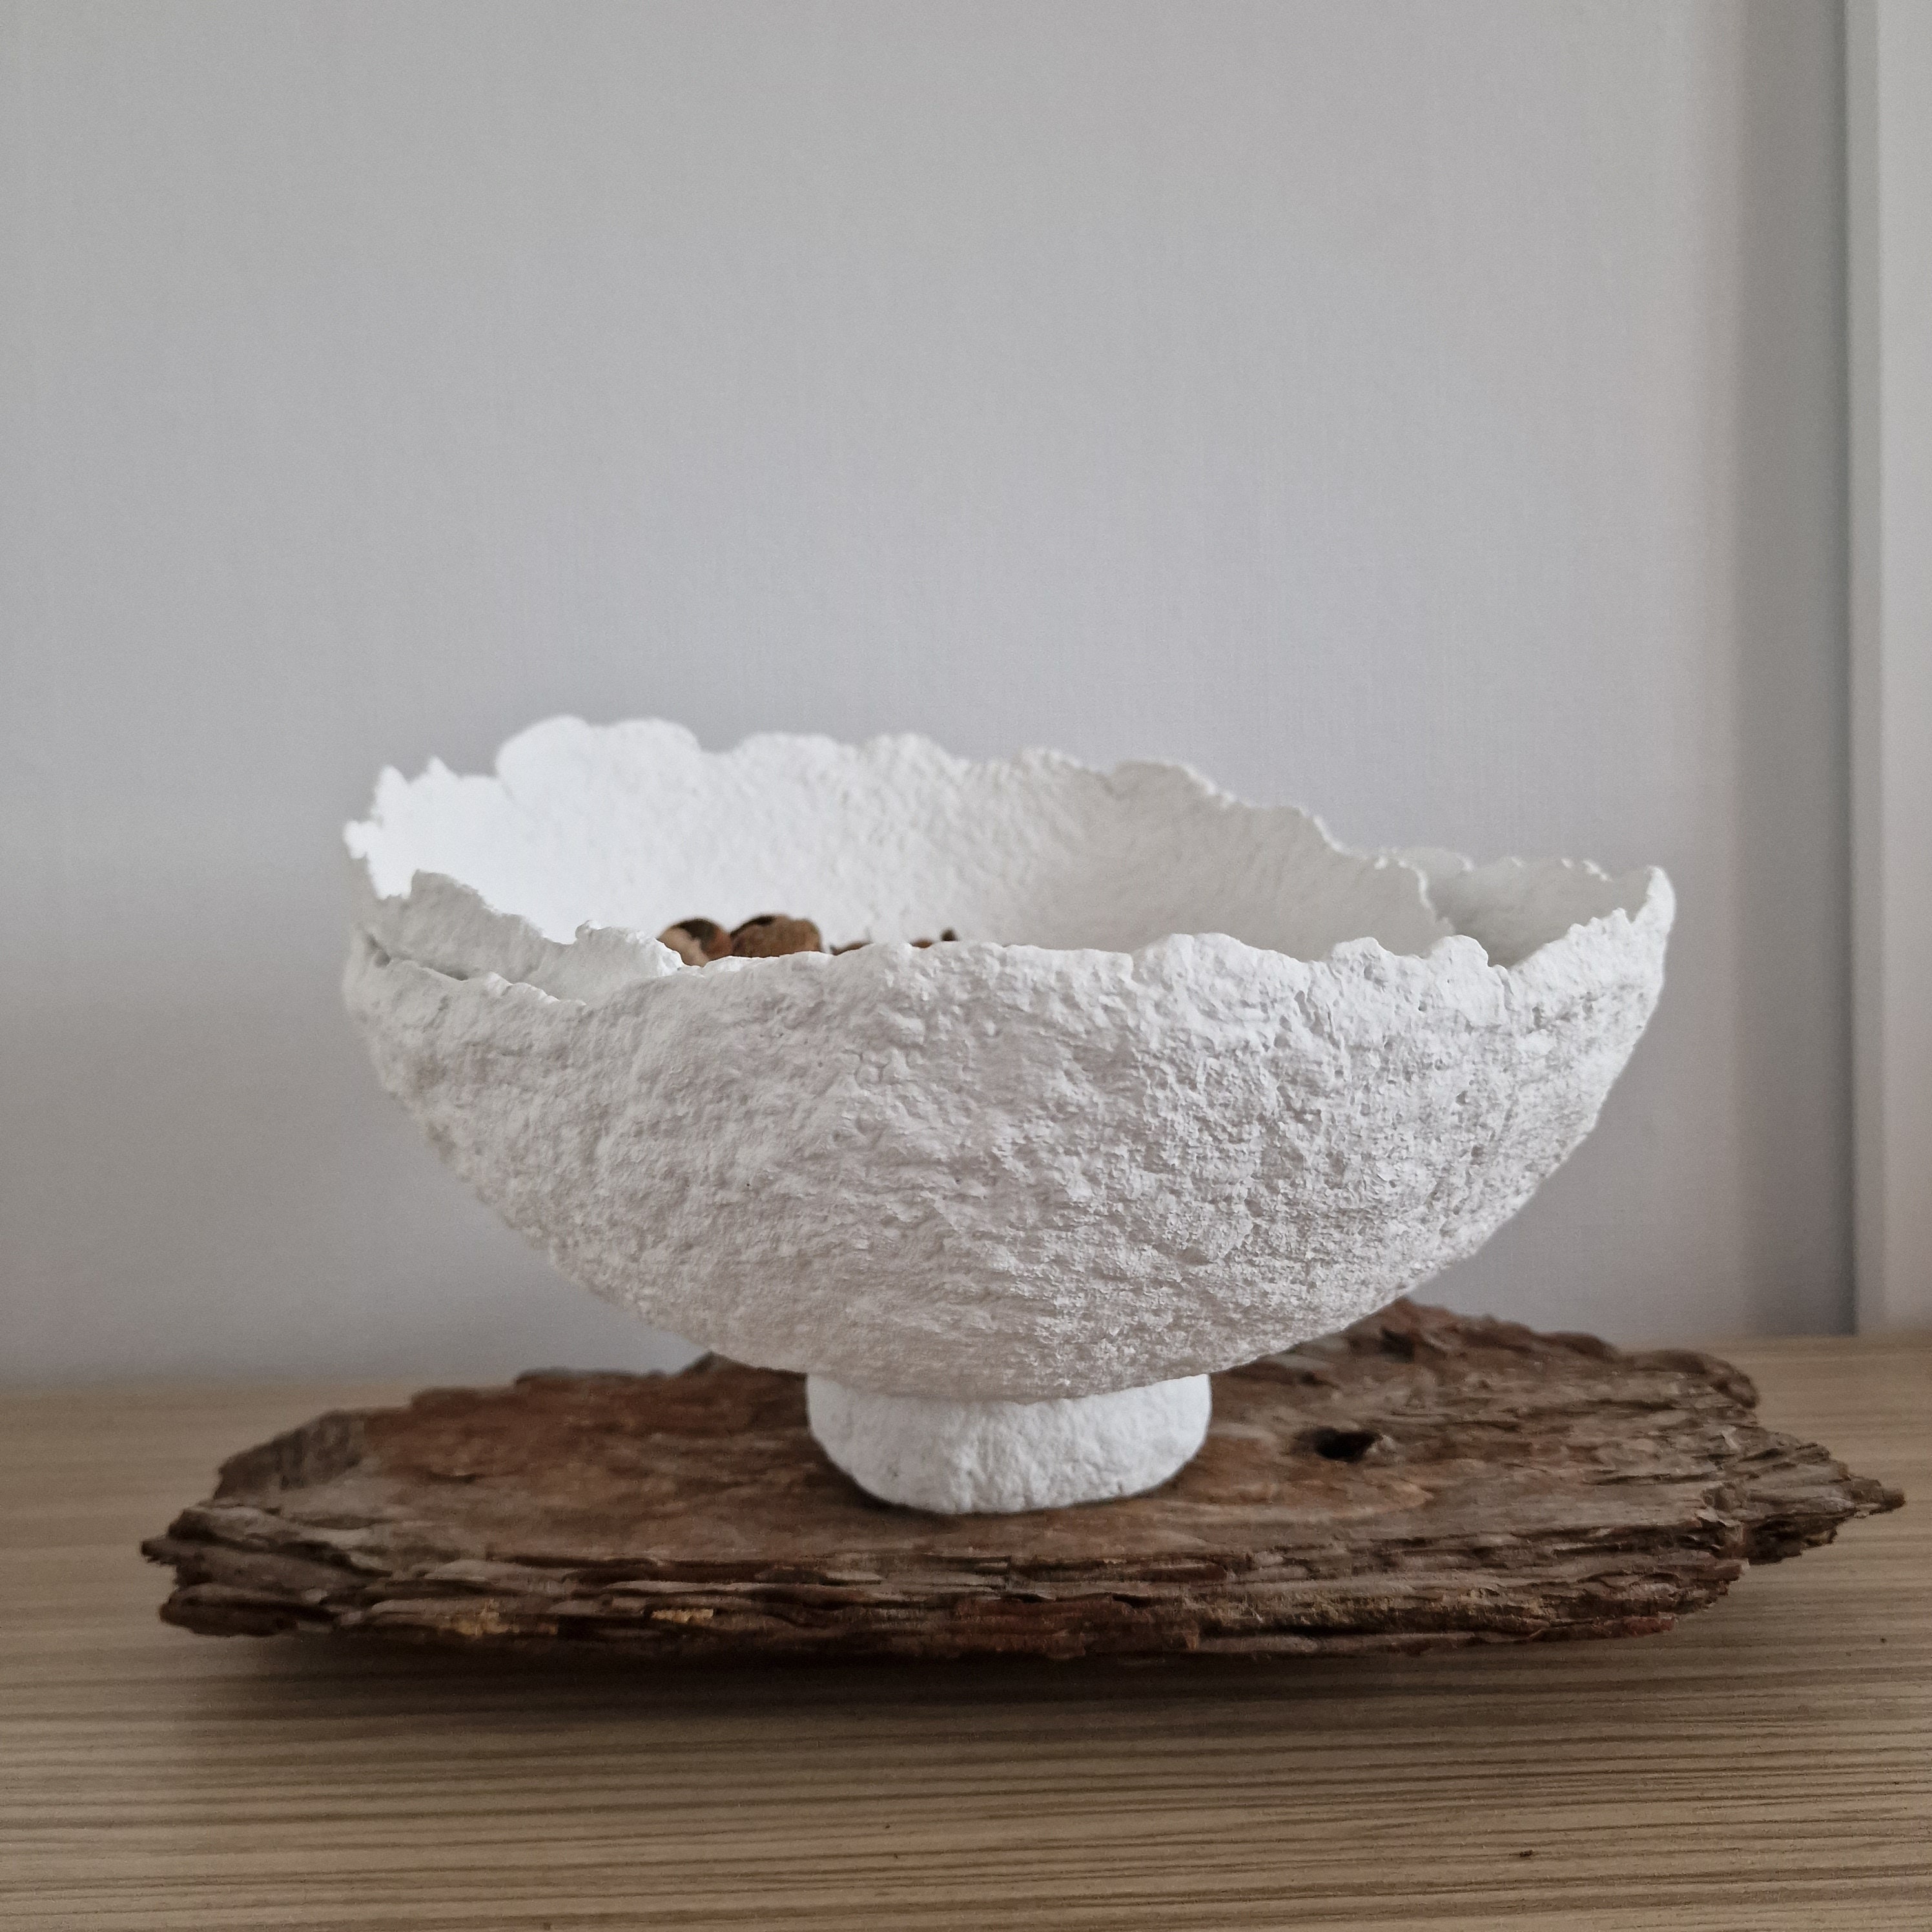 Decorative Papier Mâché Bowl – the hōm market